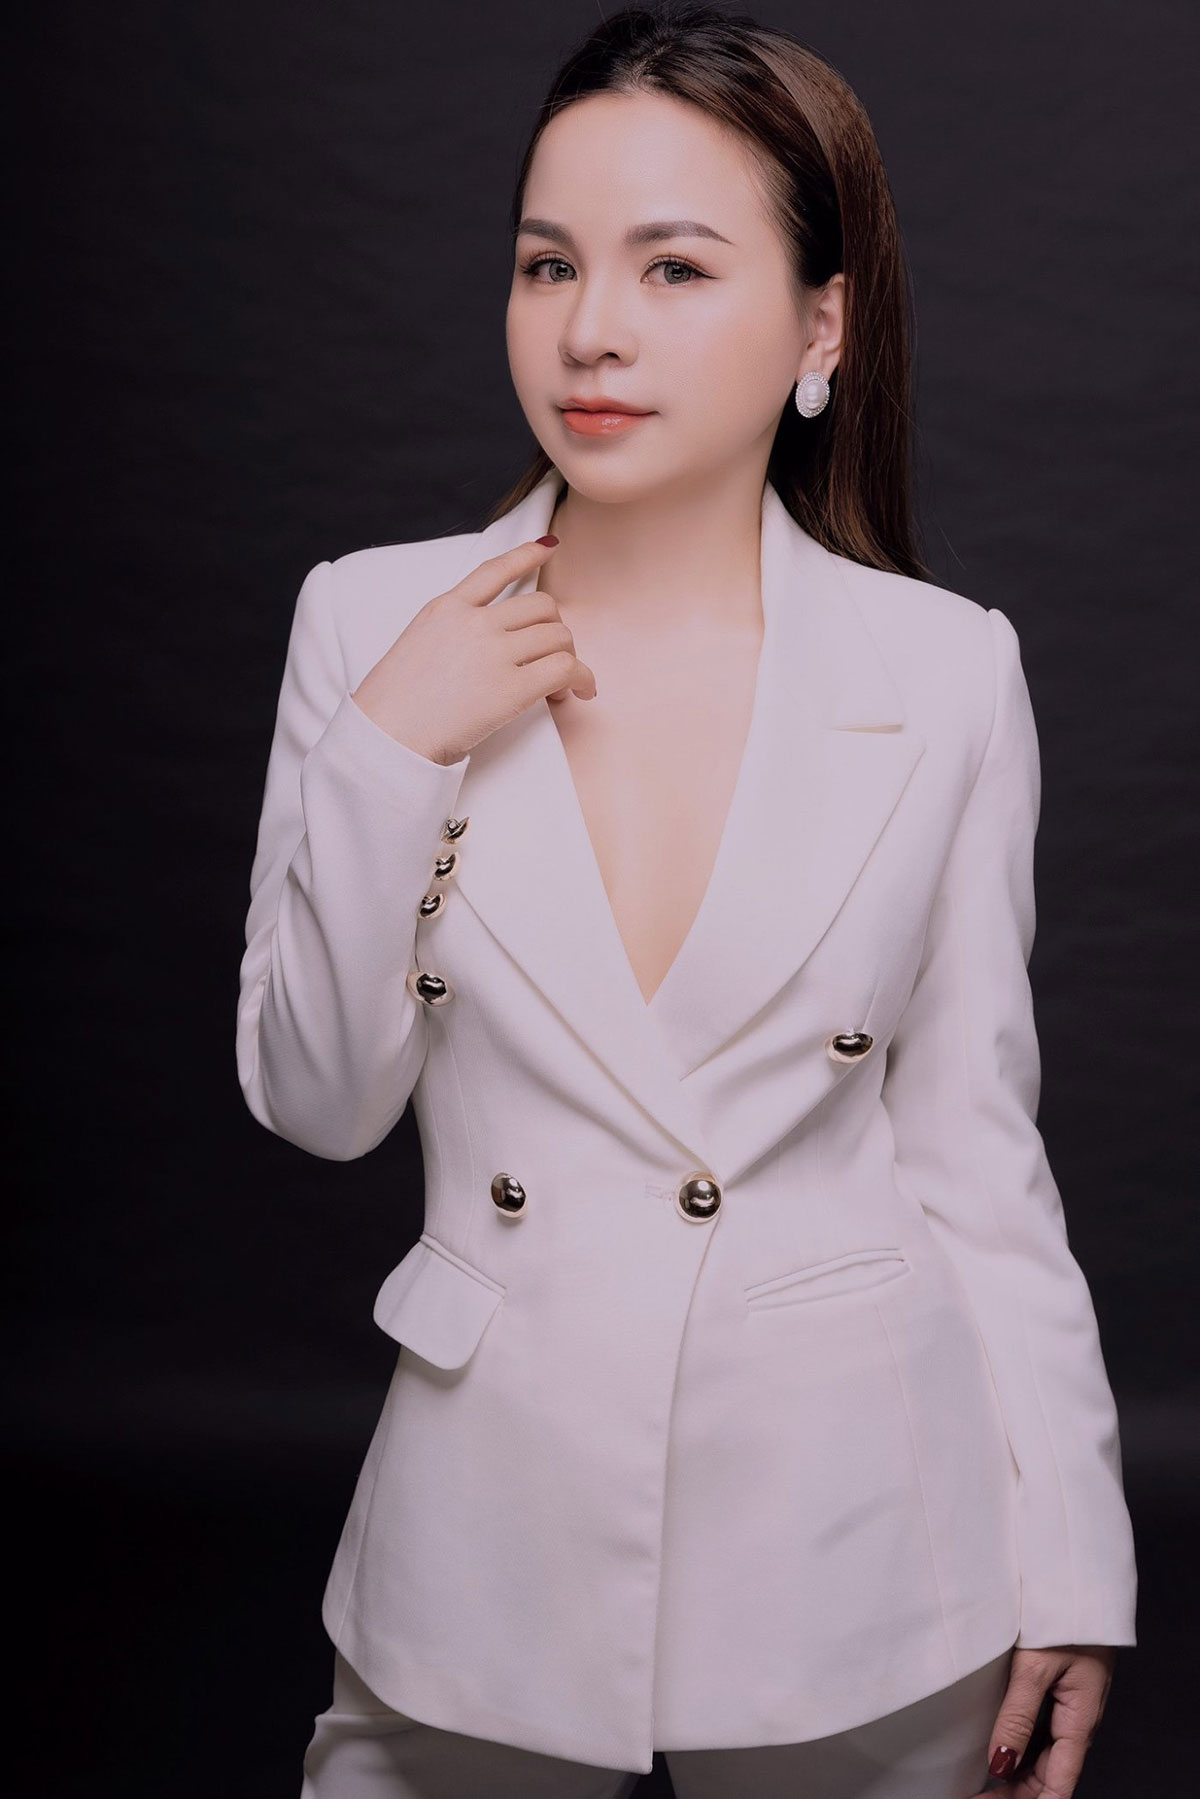 CEO Nguyễn Kiều Anh luôn đặt khách hàng làm trọng tâm